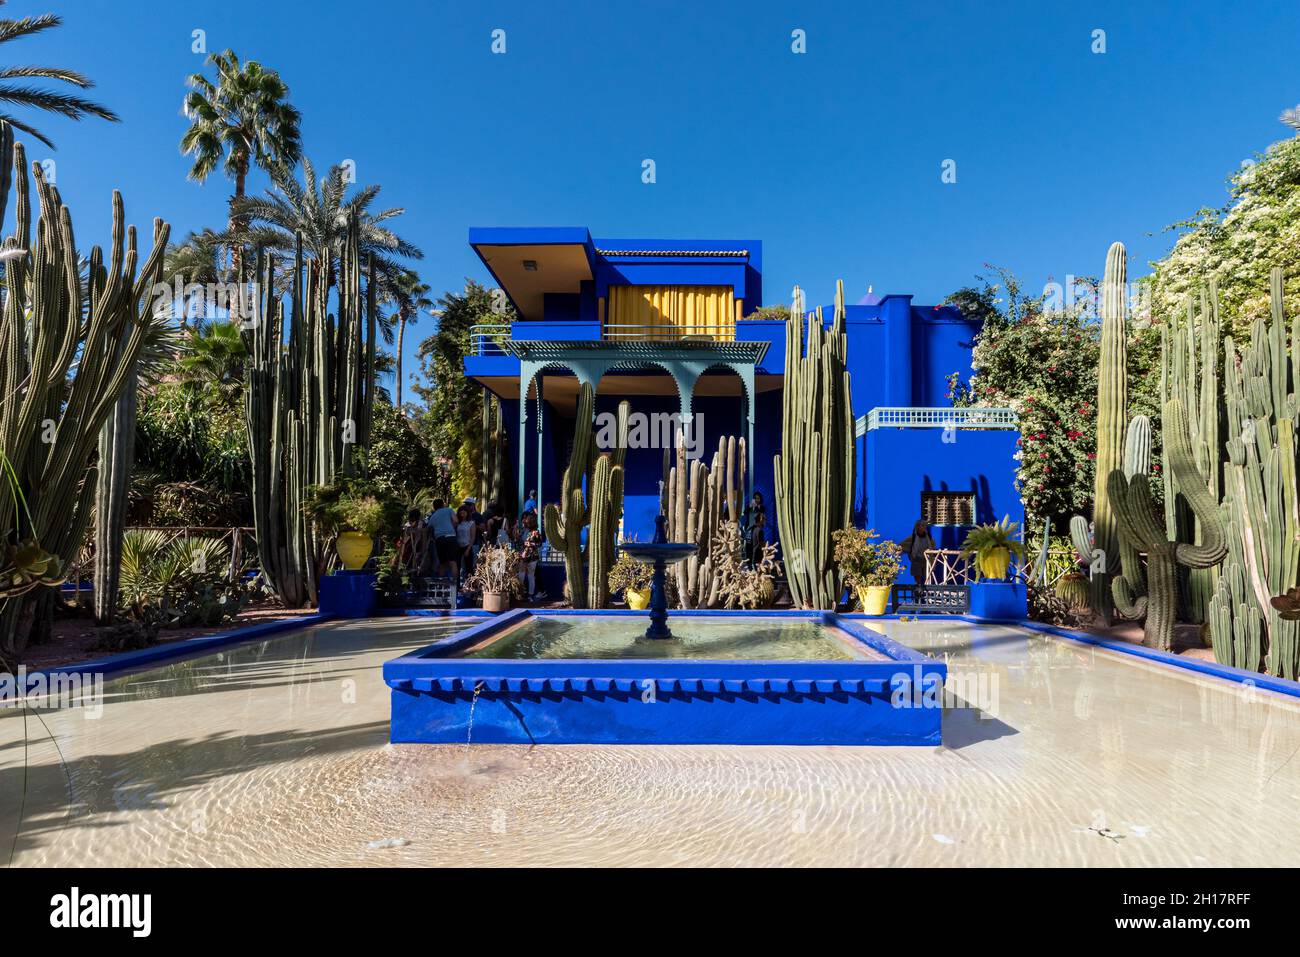 Le Jardin Majorelle, Marrakech, Marocco - 14 novembre 2017: Bella architettura blu del complesso villa e giardino botanico tropicale costruito in t Foto Stock